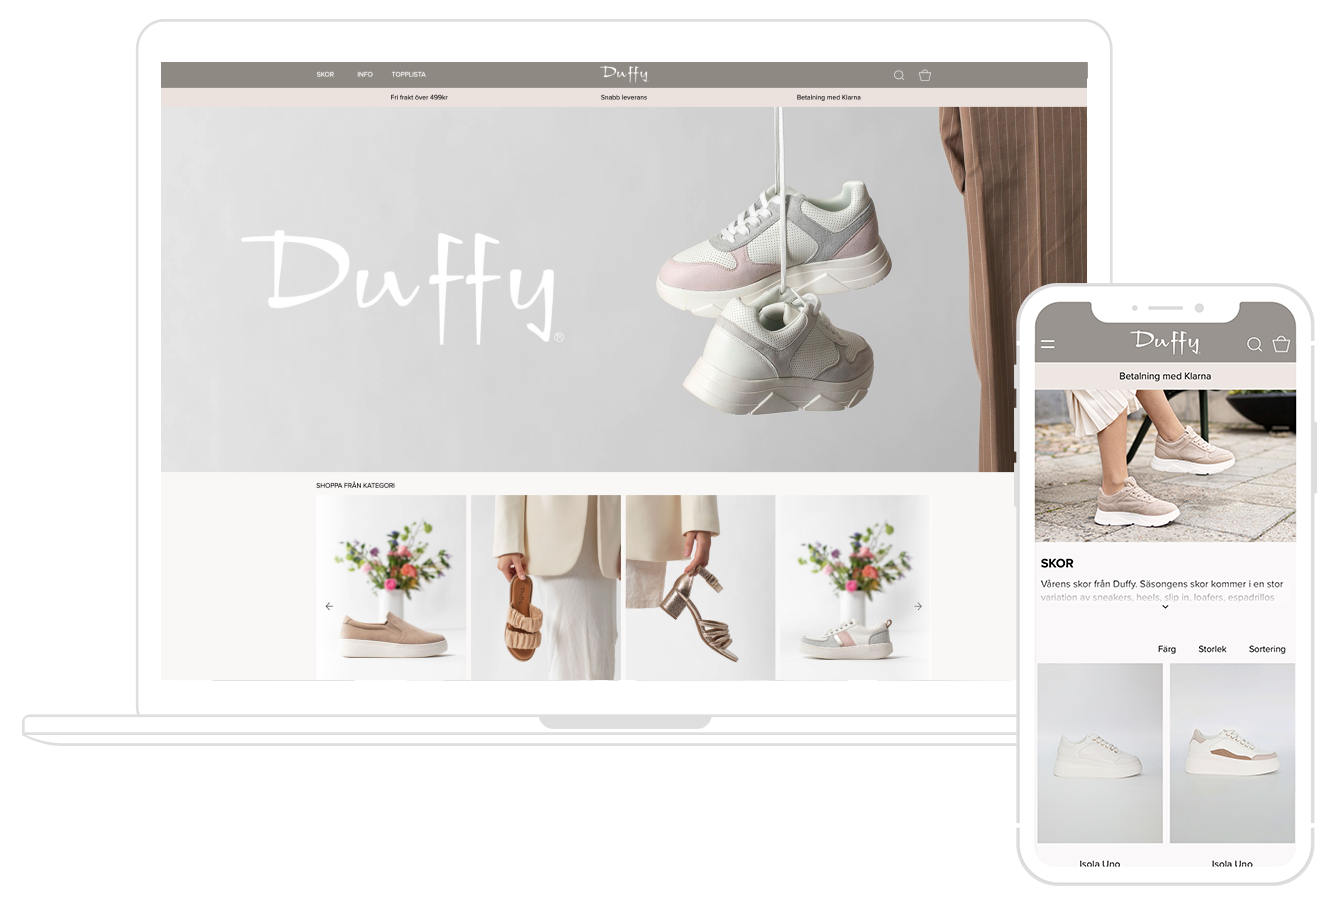 Snavs desinficere kort Duffy startar upp egen e-handel